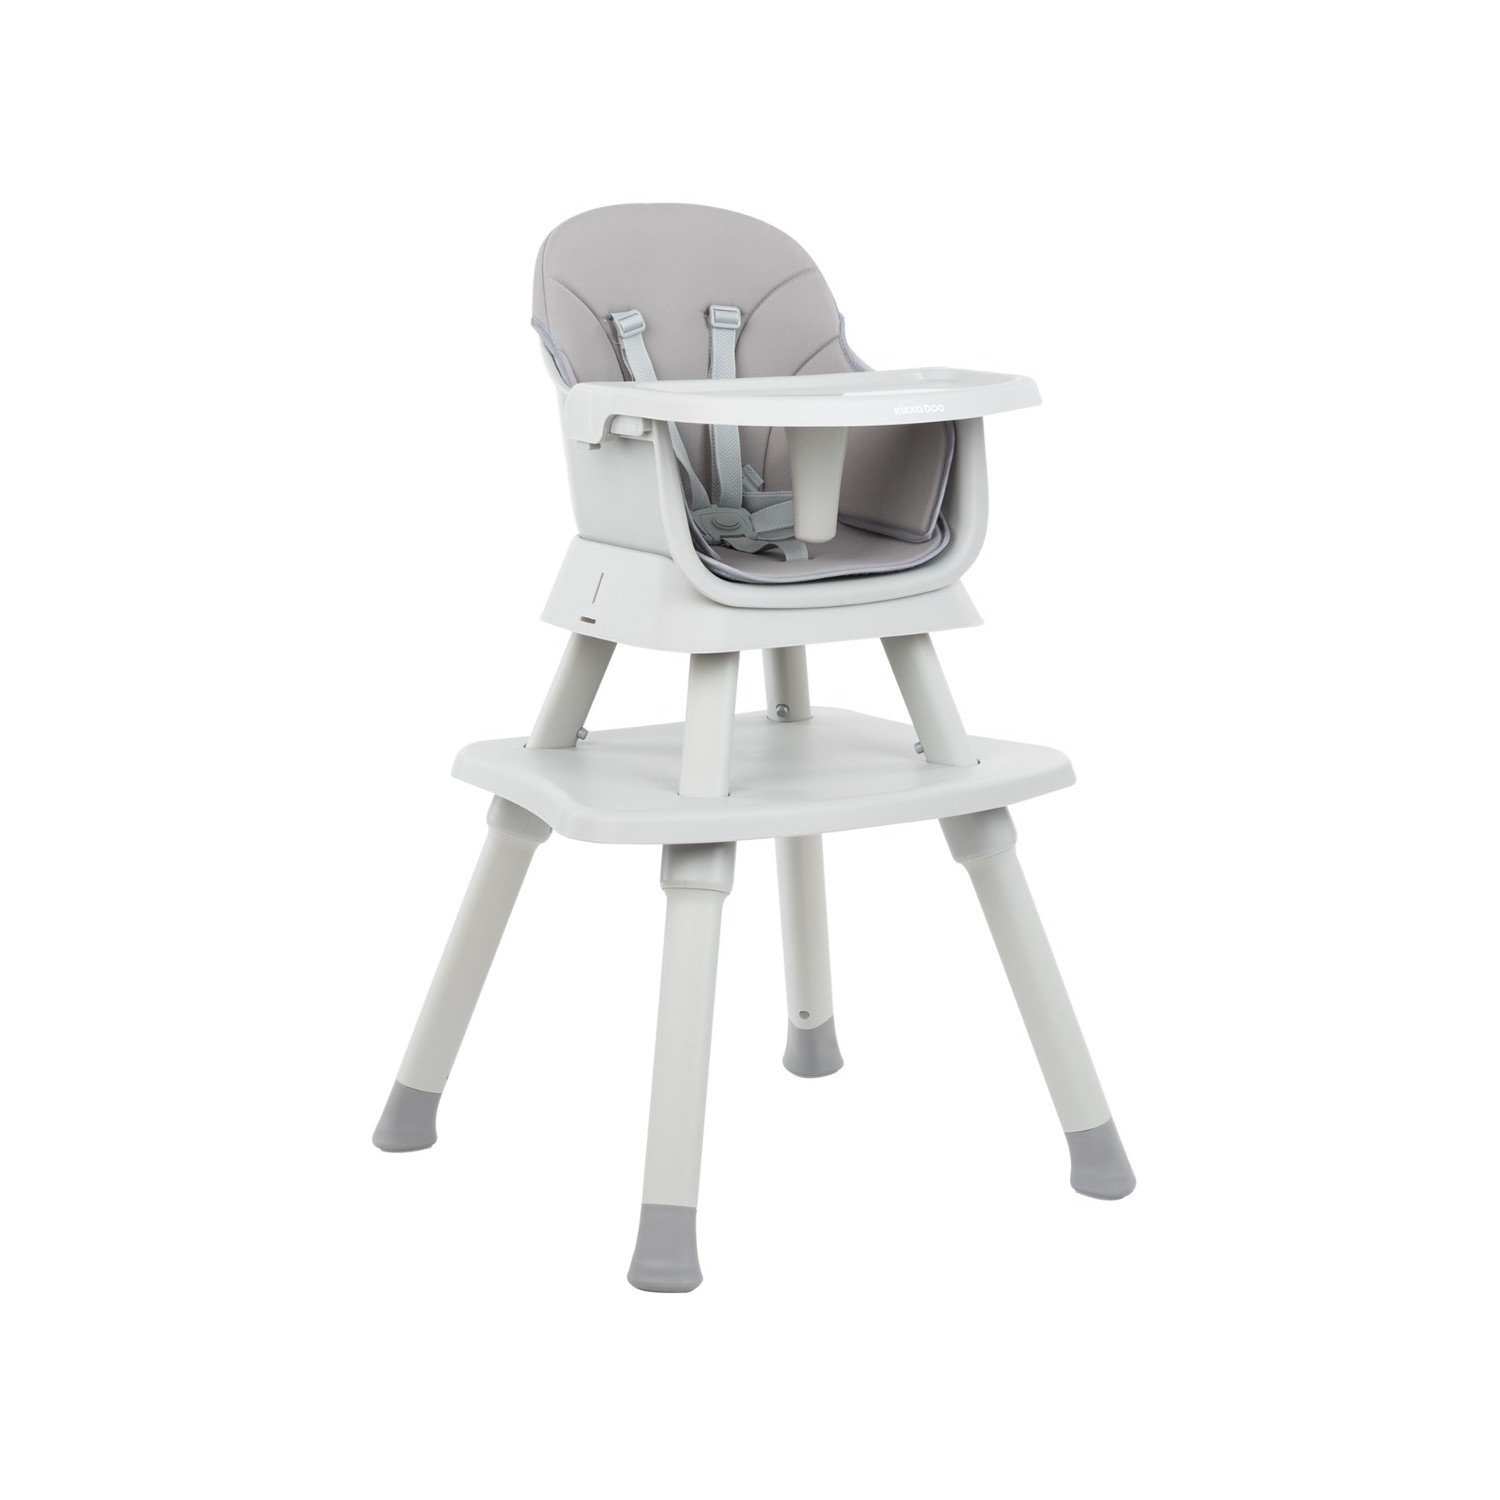 Trona bebes 2 en 1 color gris convertible en silla y mesa de Kikkaboo.